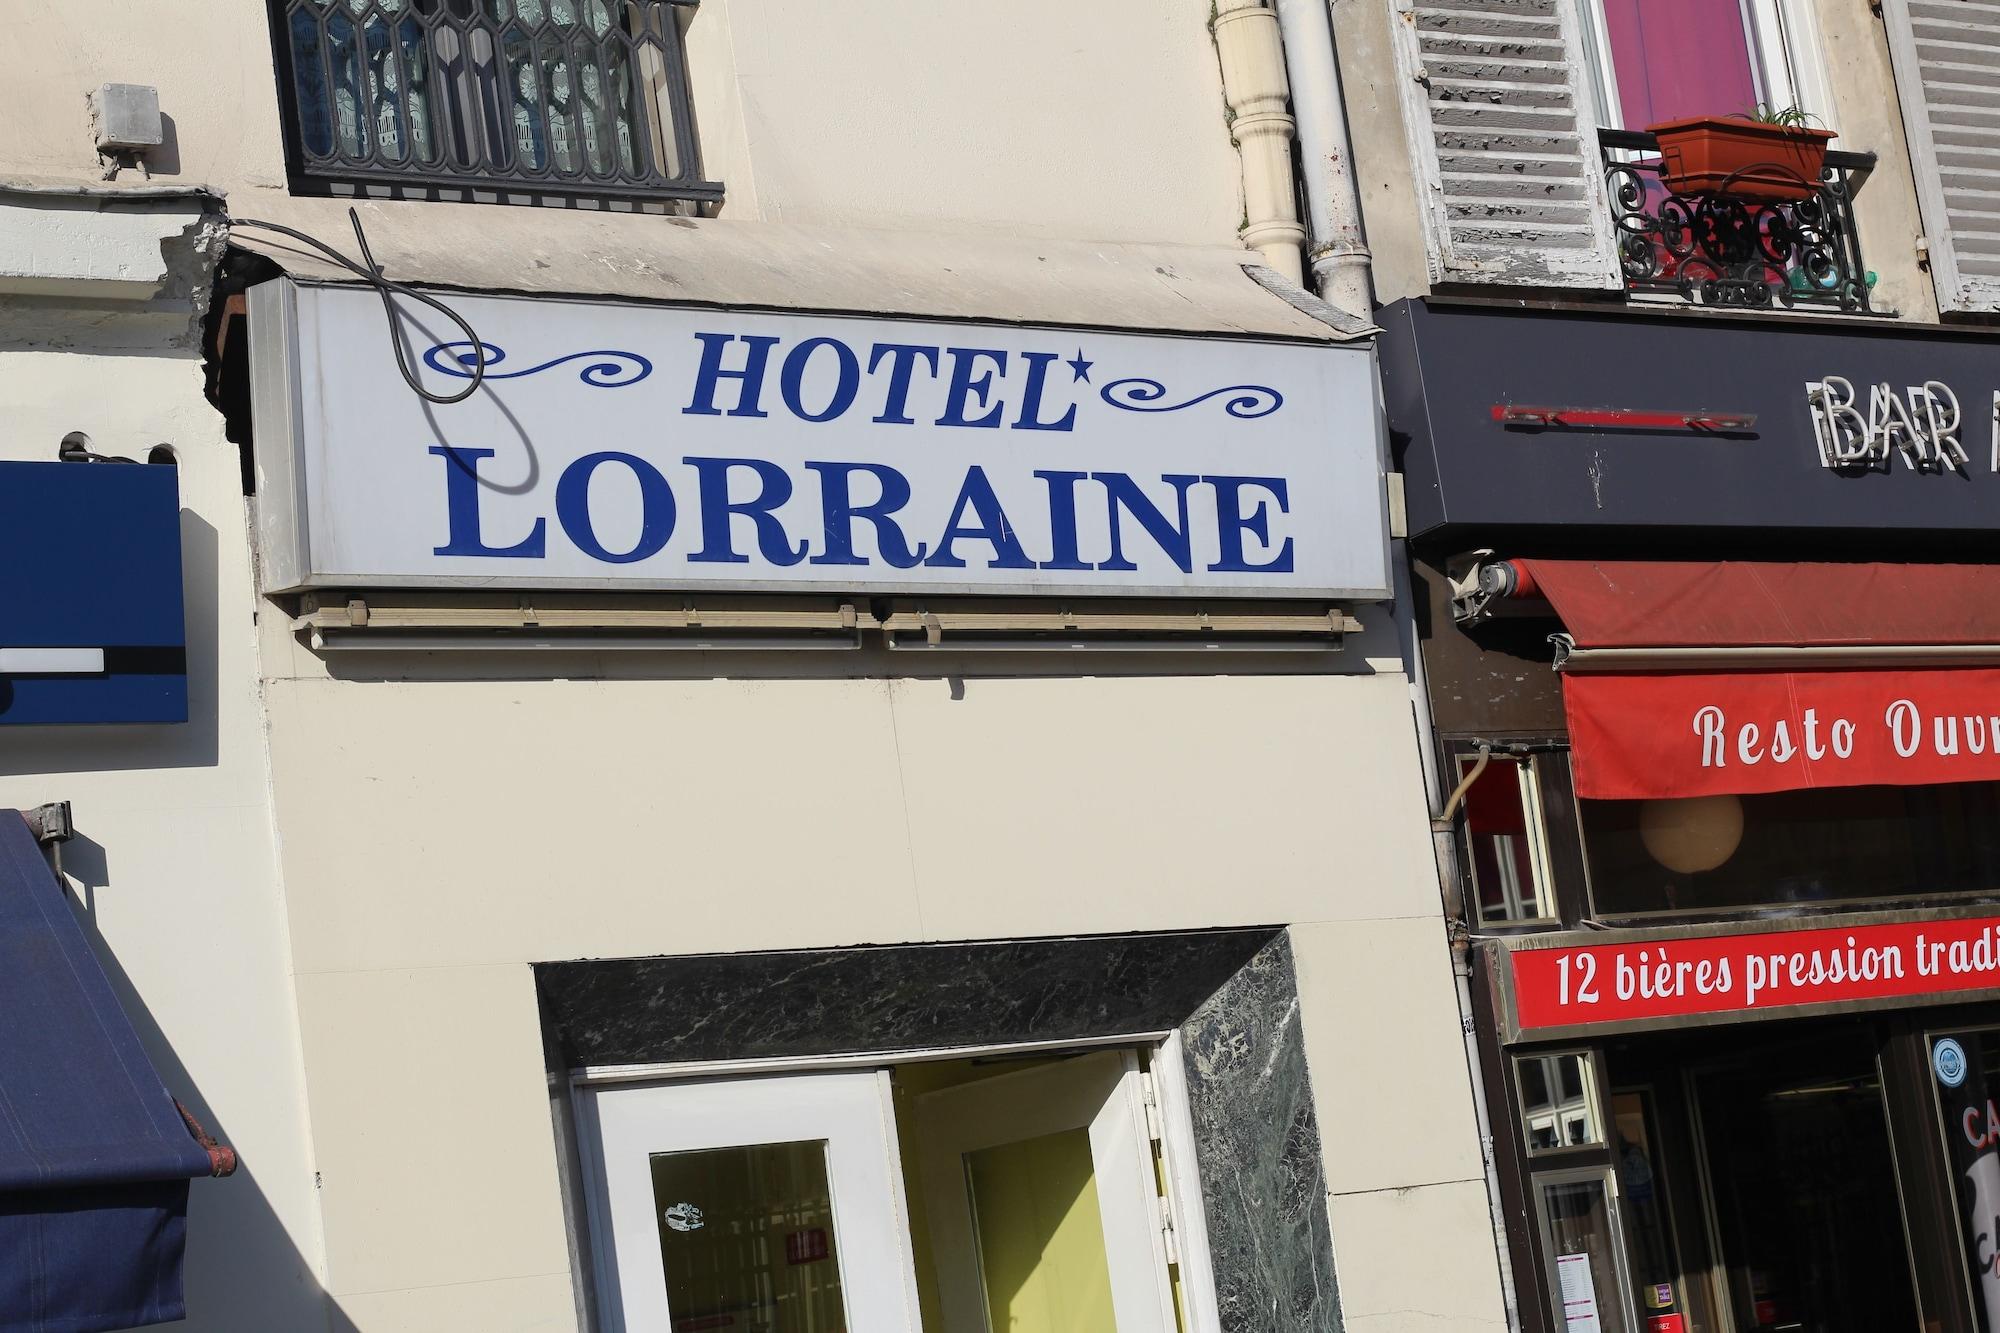 Hôtel de Lorraine image